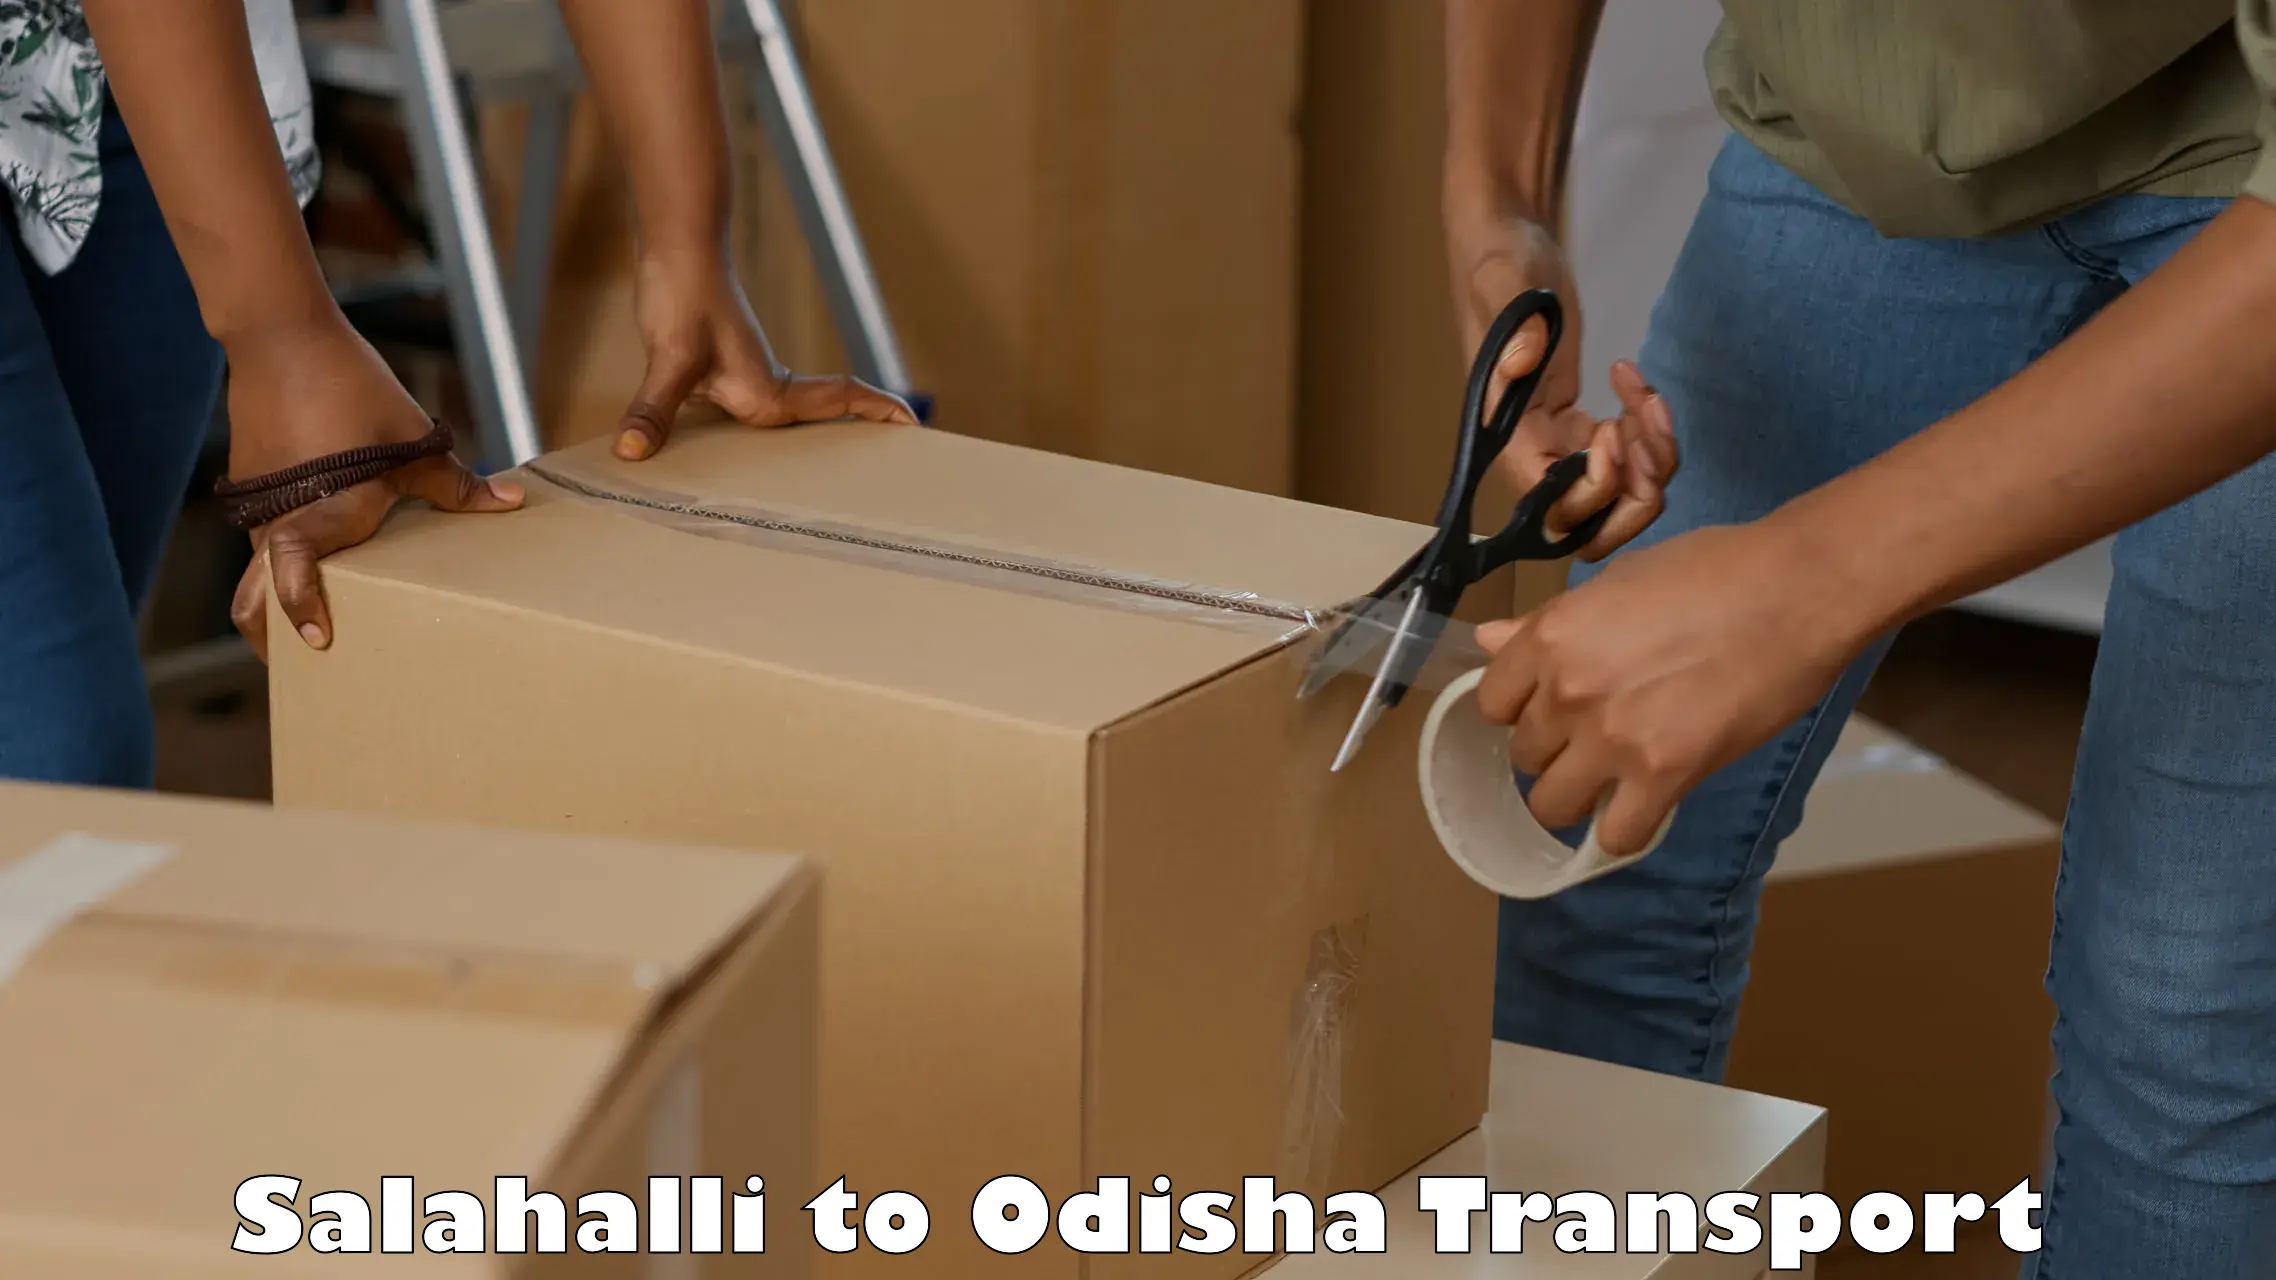 Daily transport service Salahalli to Odisha